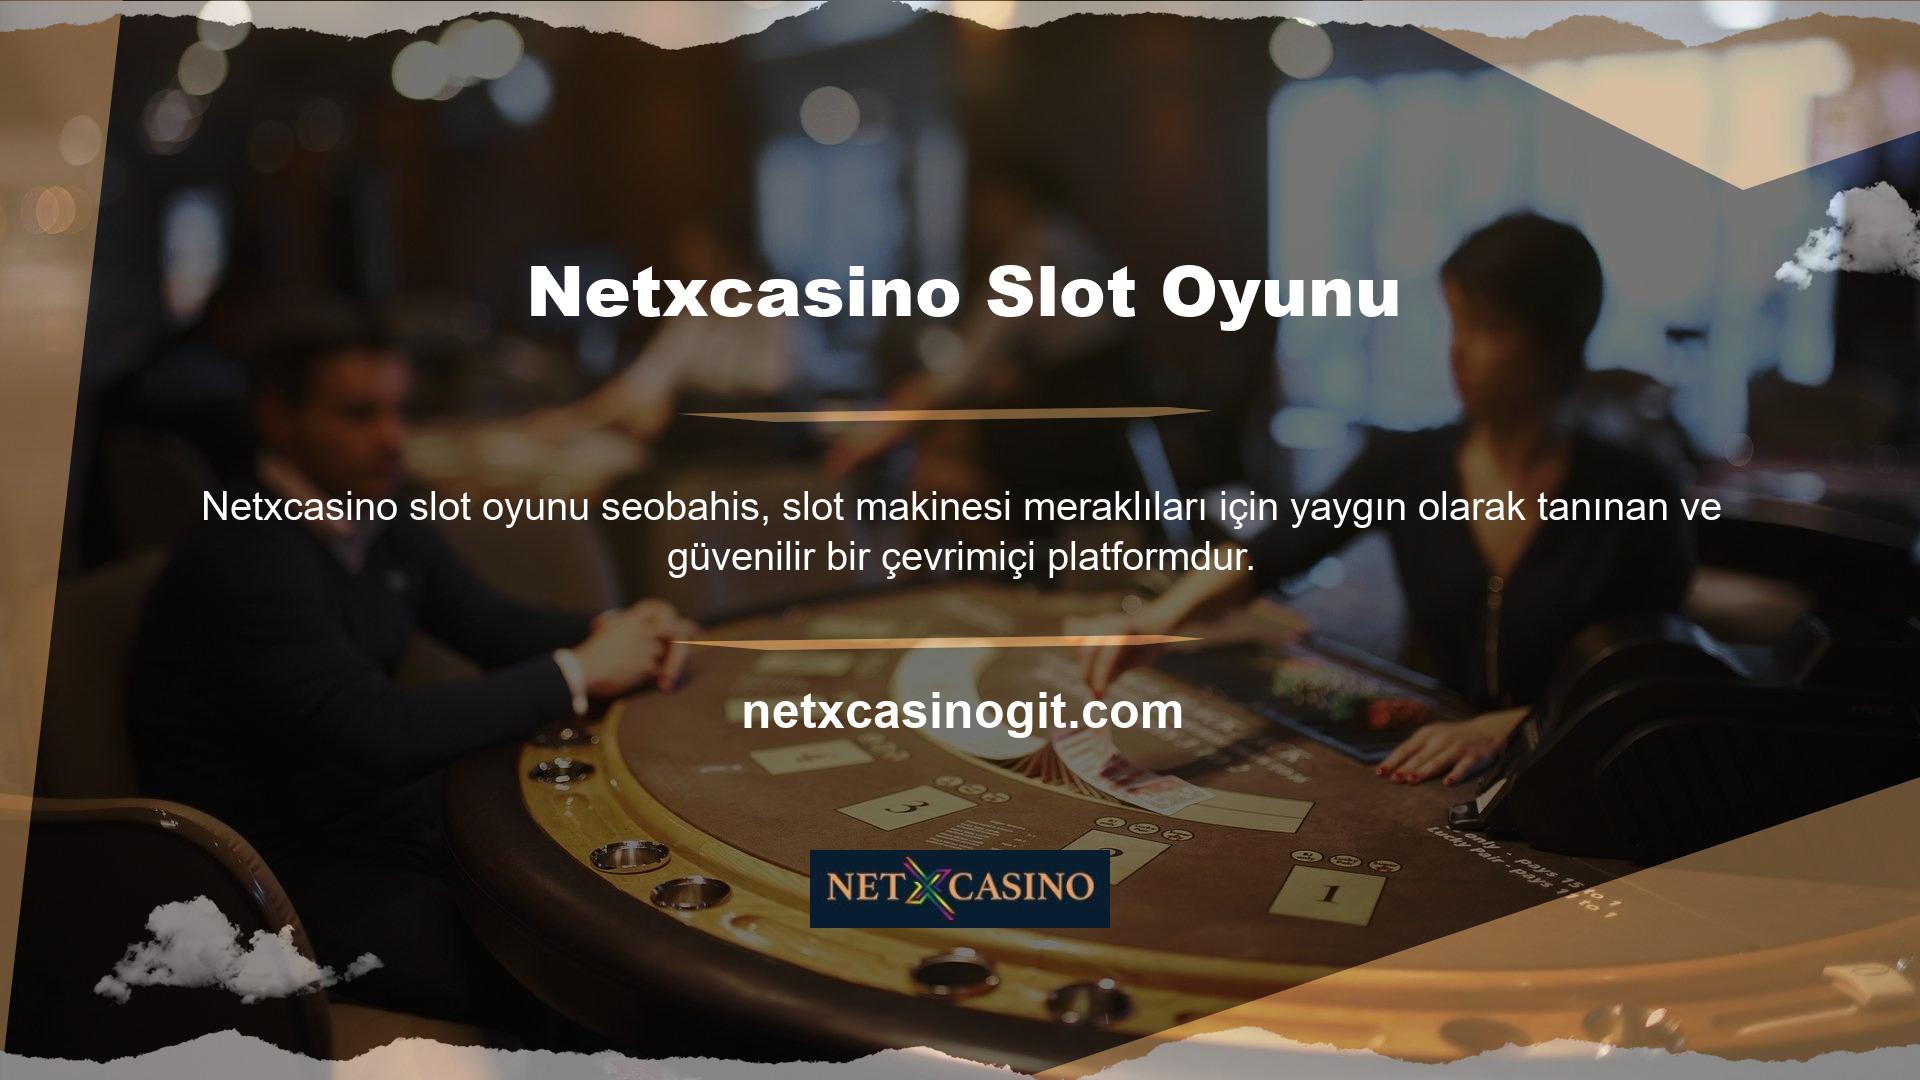 Netxcasino slot makinesi sitesi, eğlenceli oyunlara ve mükemmel görüntü kalitesine olanak tanıyan sağlam bir altyapı sunuyor